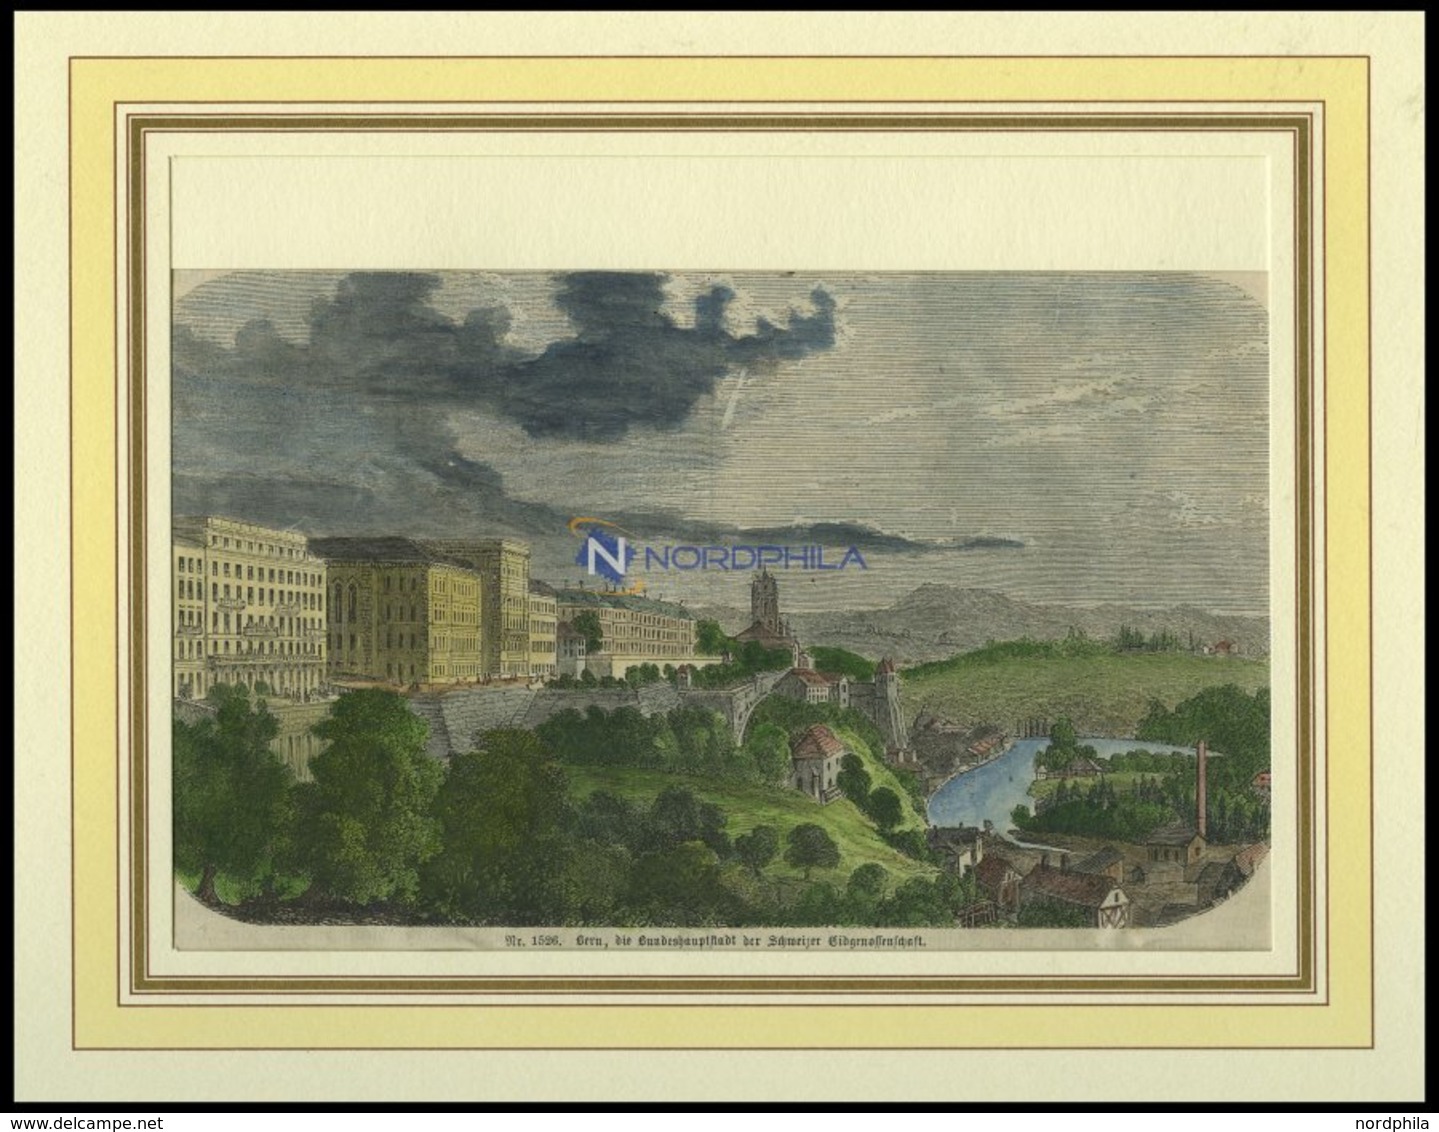 BERN, Teilansicht, Kolorierter Holzstich Von 1860 - Litografia